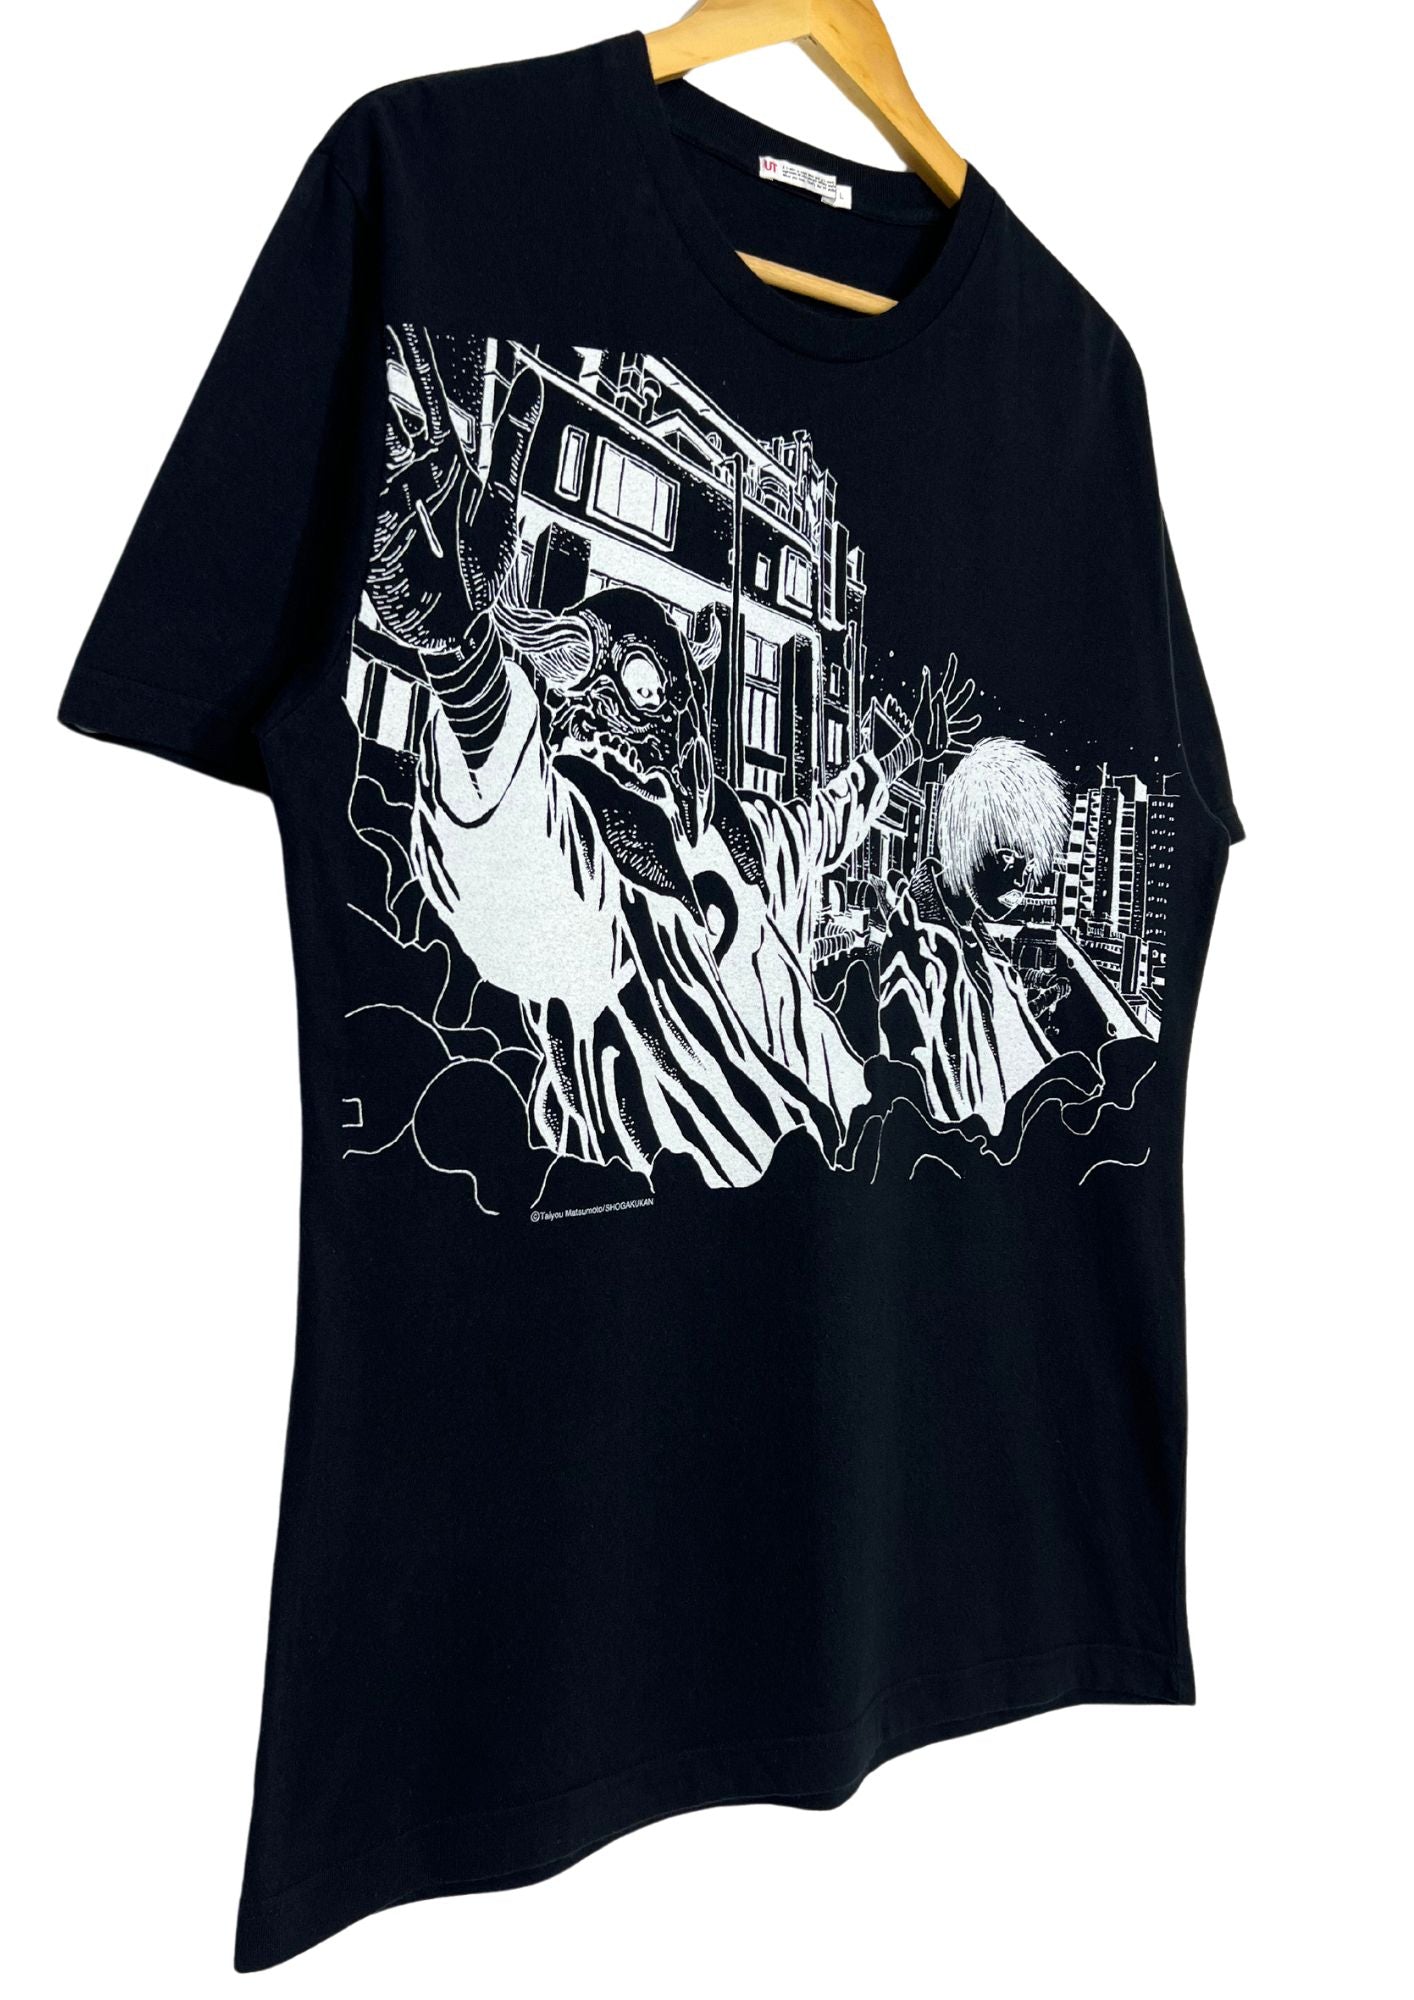 2007 Taiyo Matsumoto x UT Tekkonkinkreet T-shirt